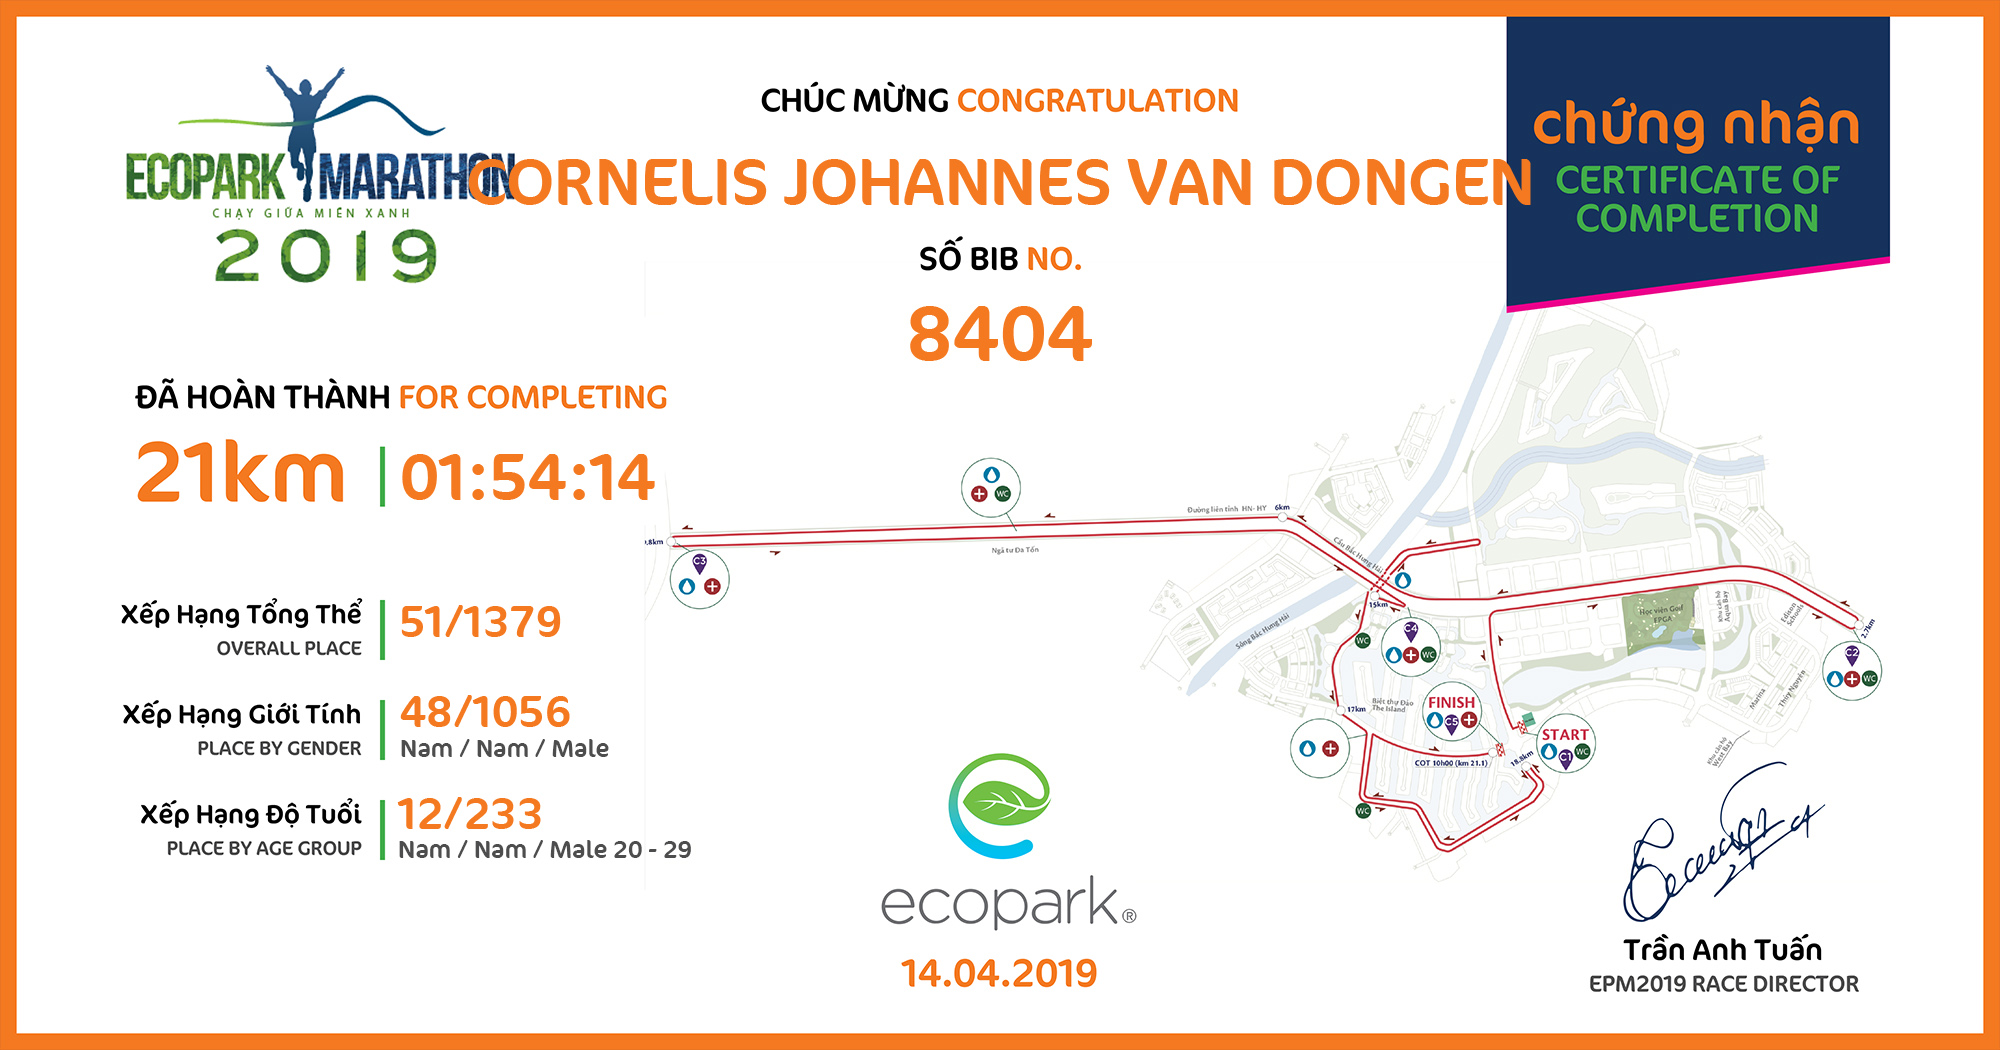 8404 - Cornelis Johannes van Dongen